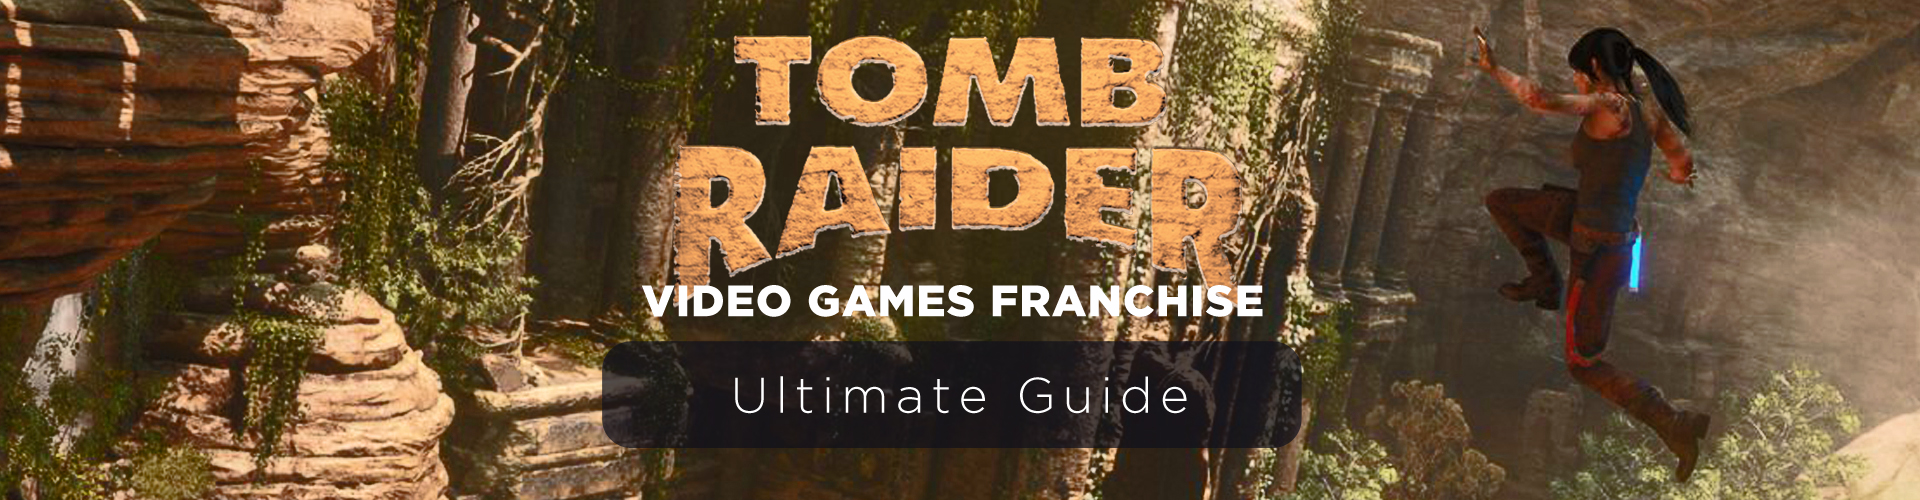 Franchise di Tomb Raider: La Serie di Giochi con Lara Croft